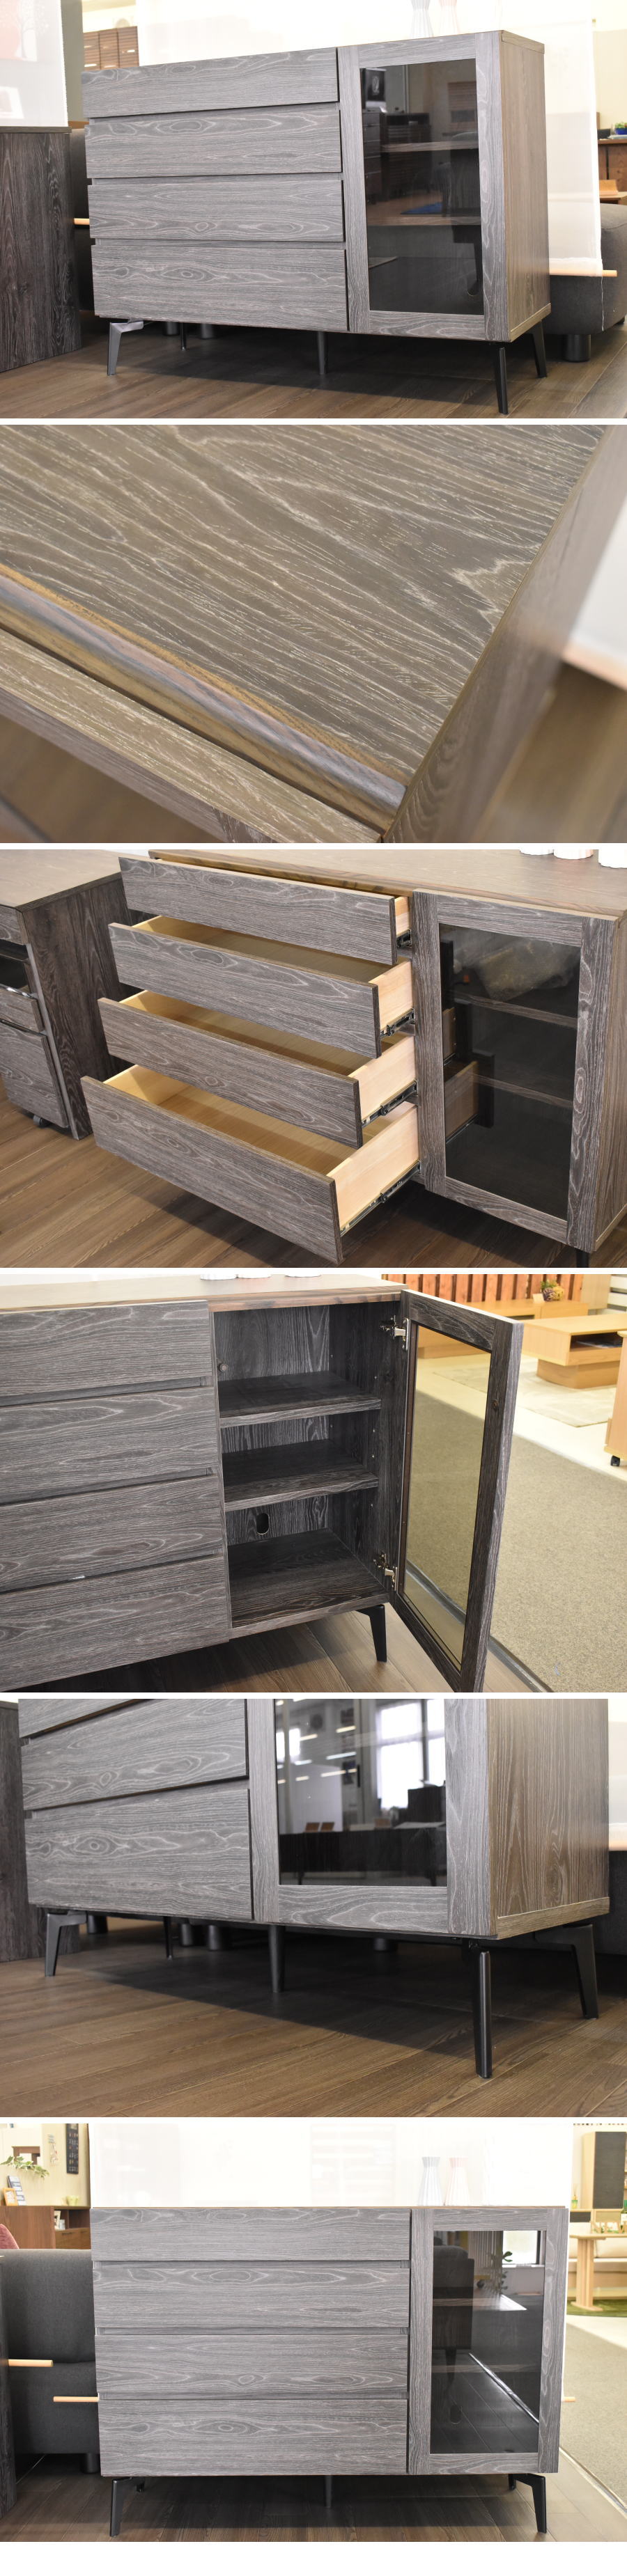 オーダ品天然木 モダン 120cm幅 サイドボード 家具 アウトレット 収納 リビング 未使用 美品 北欧スタイル HE0514G3 サイドボード